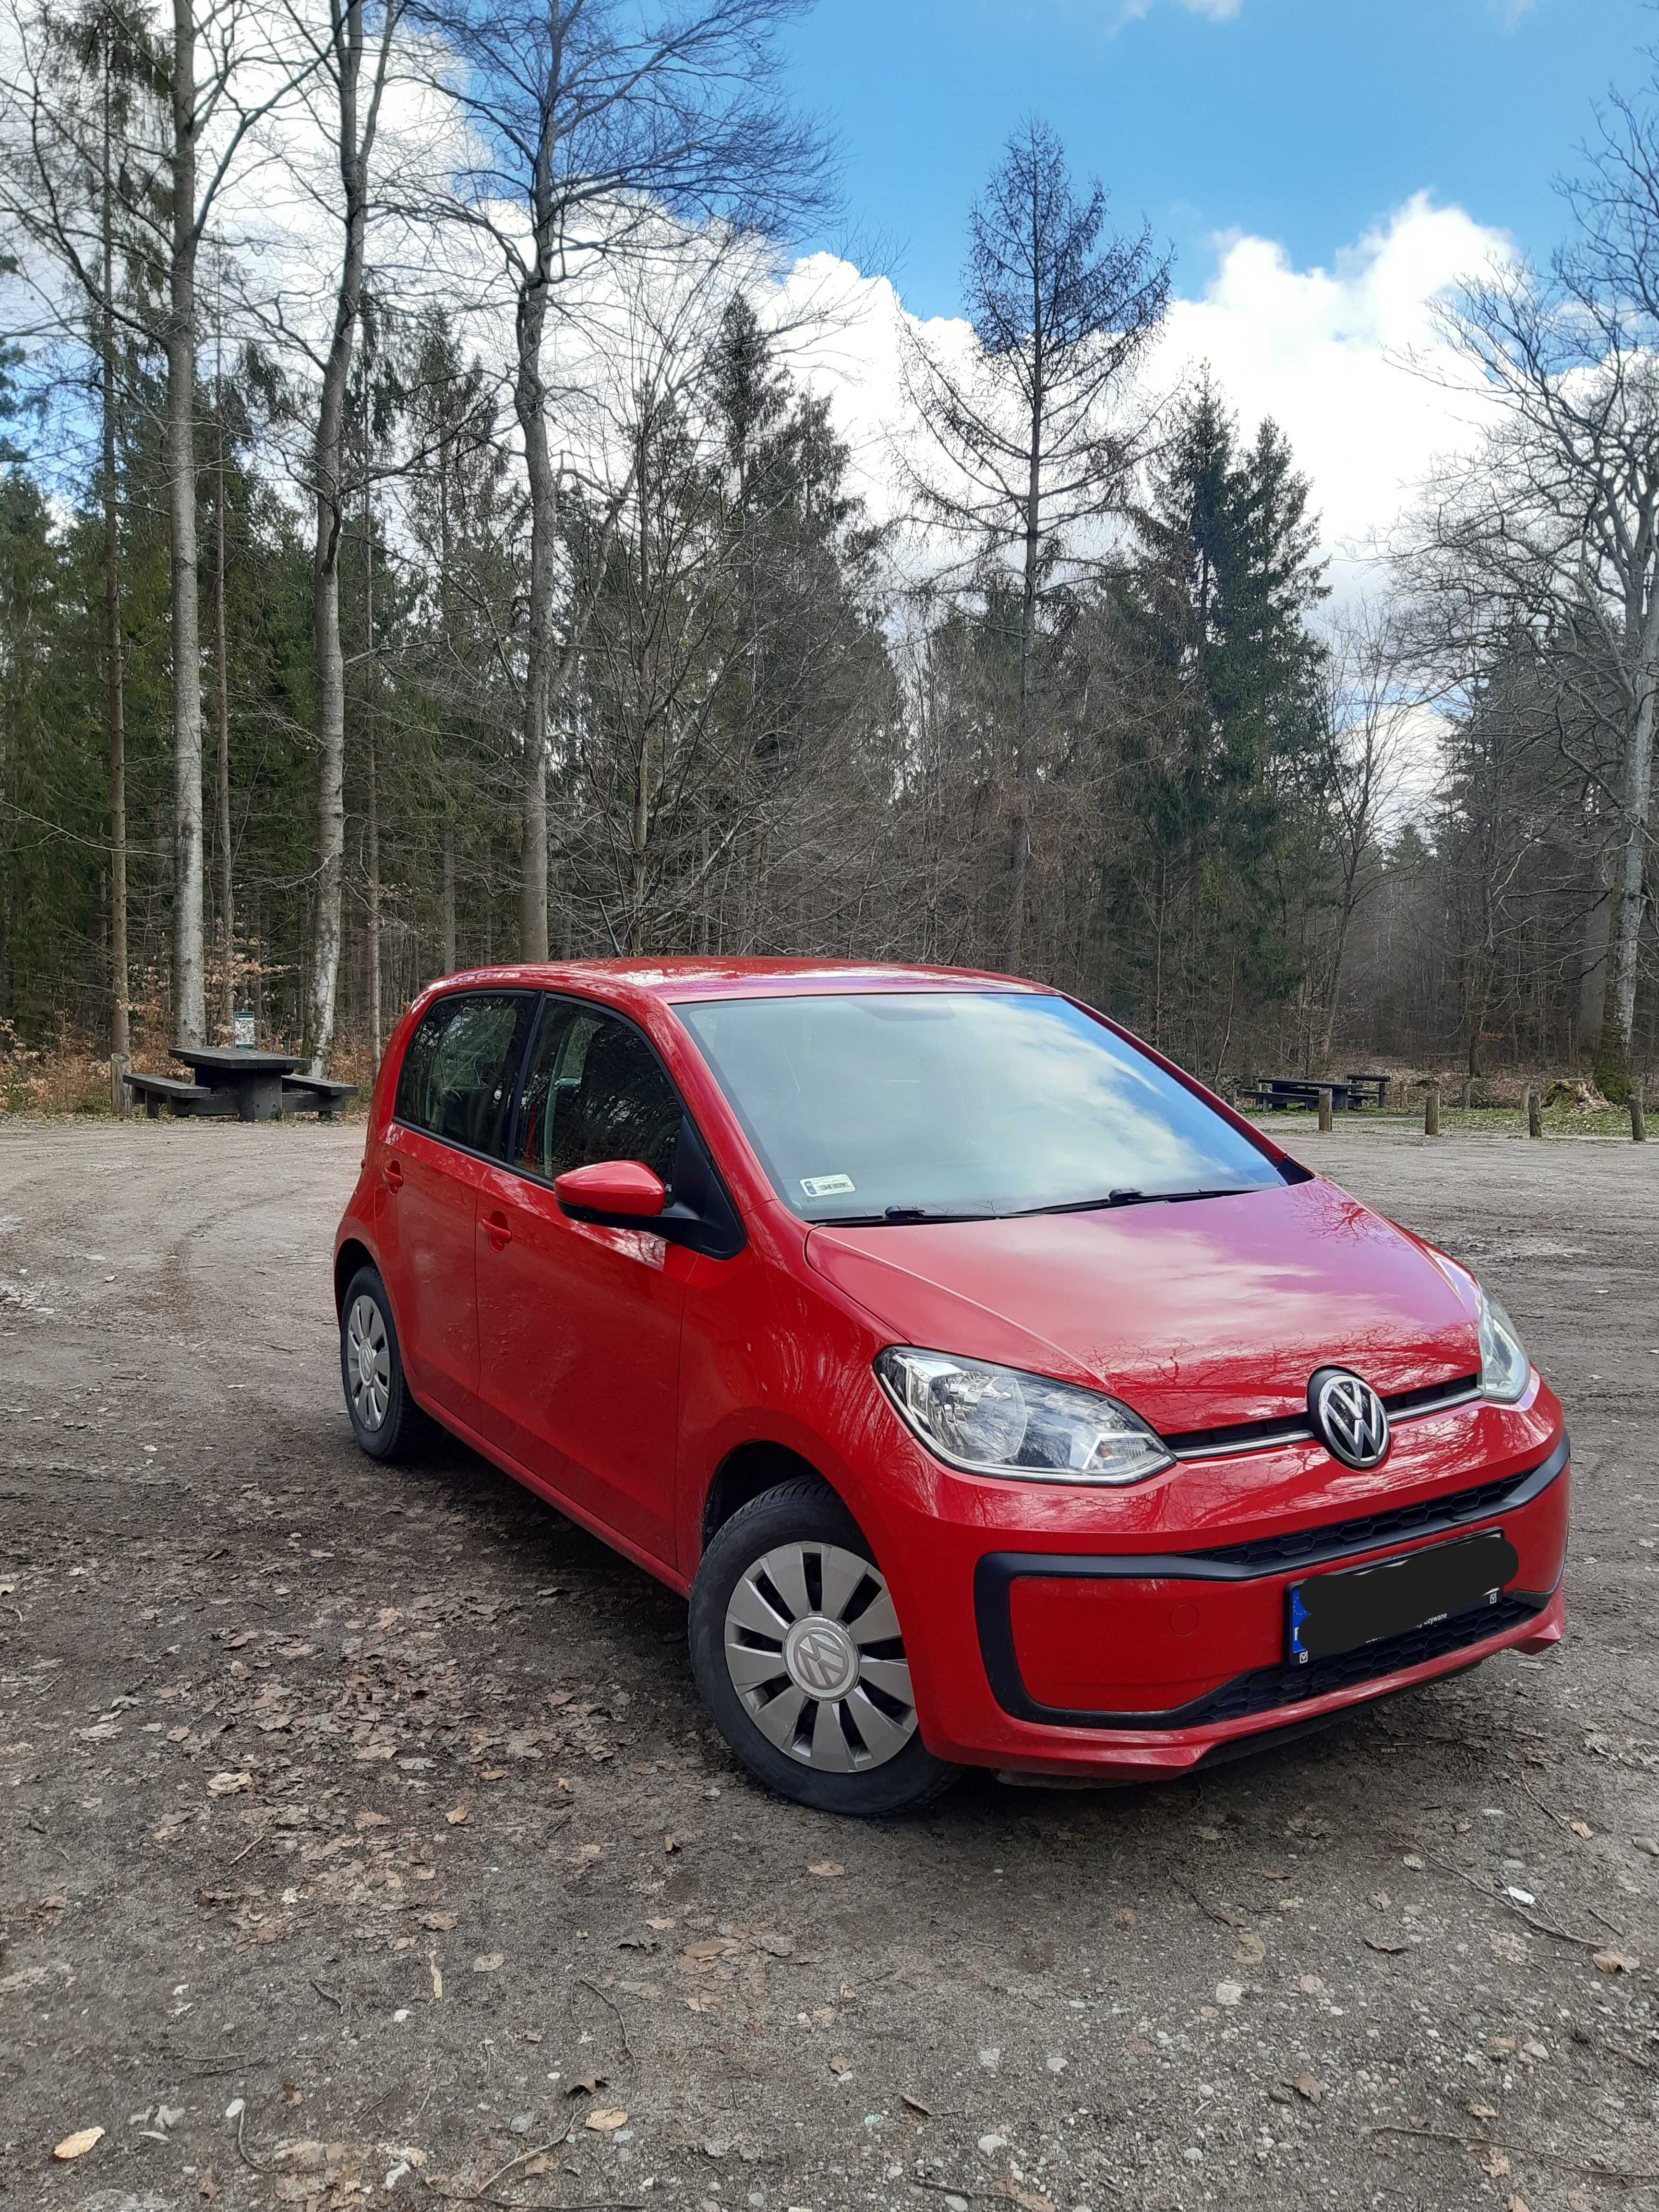 Volkswagen Up! 2017r. 4-drzwiowy, 1.0 MPI, 61 tys km - stan idealny!